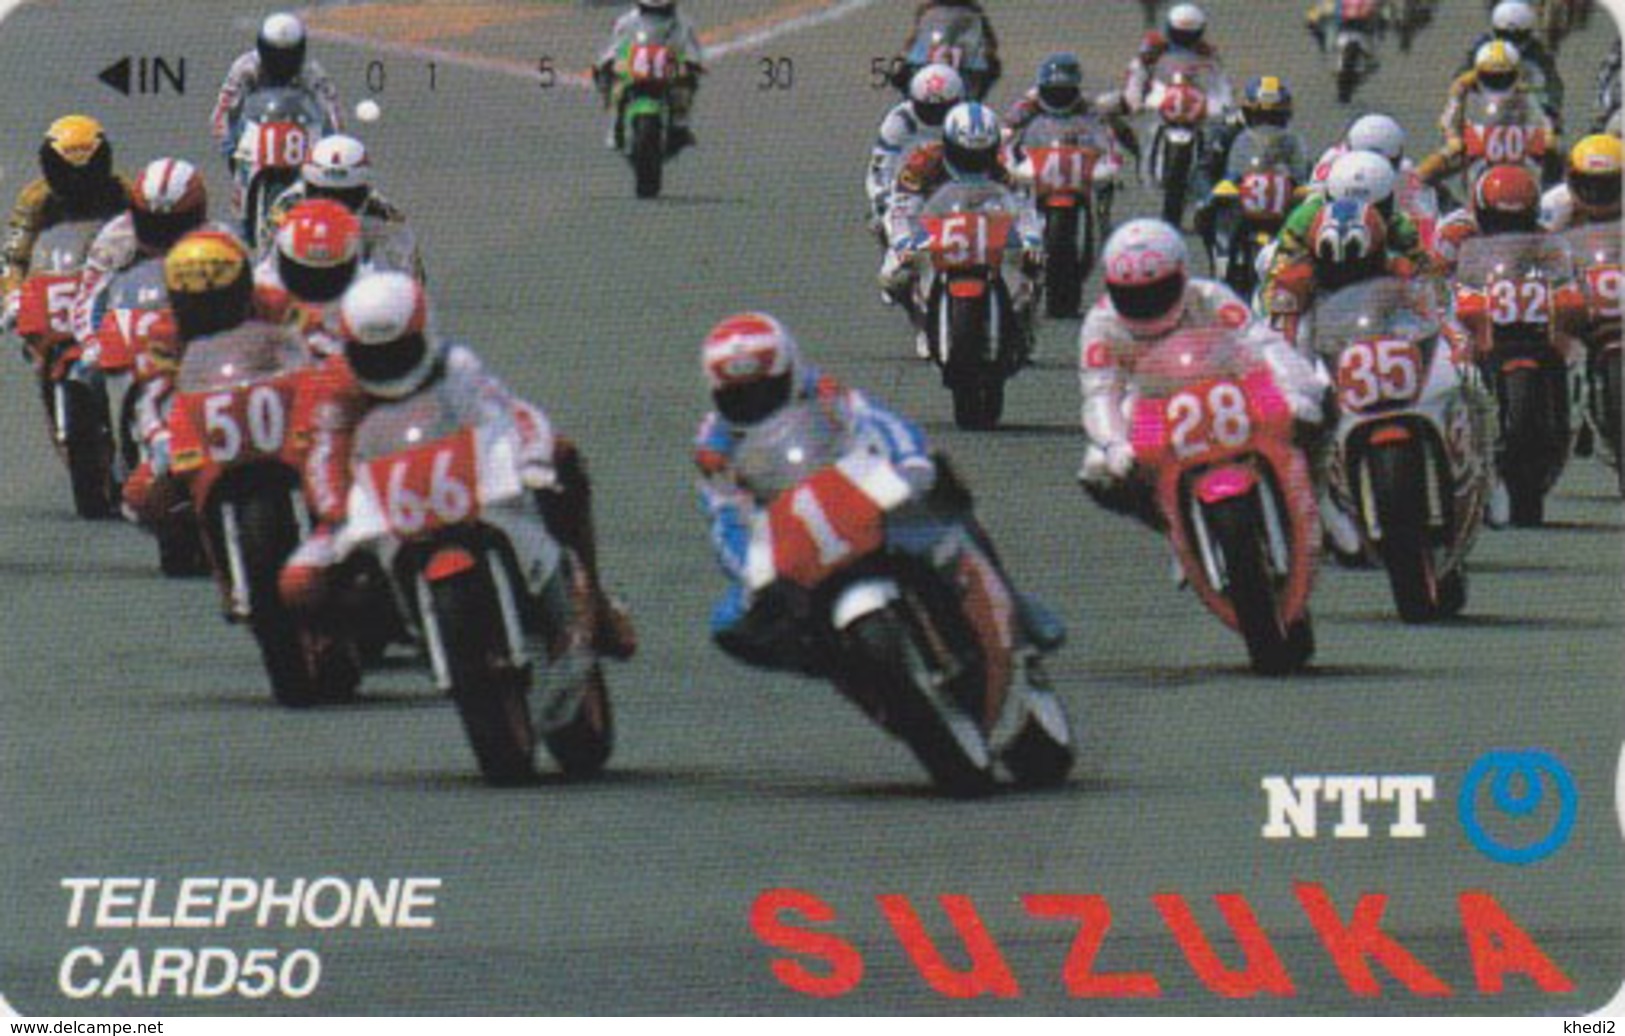 Télécarte Japon / NTT 290-038 ** ONE PUNCH ** - MOTO / SUZUKA - MOTOR BIKE RACE Japan Phonecard - Motos